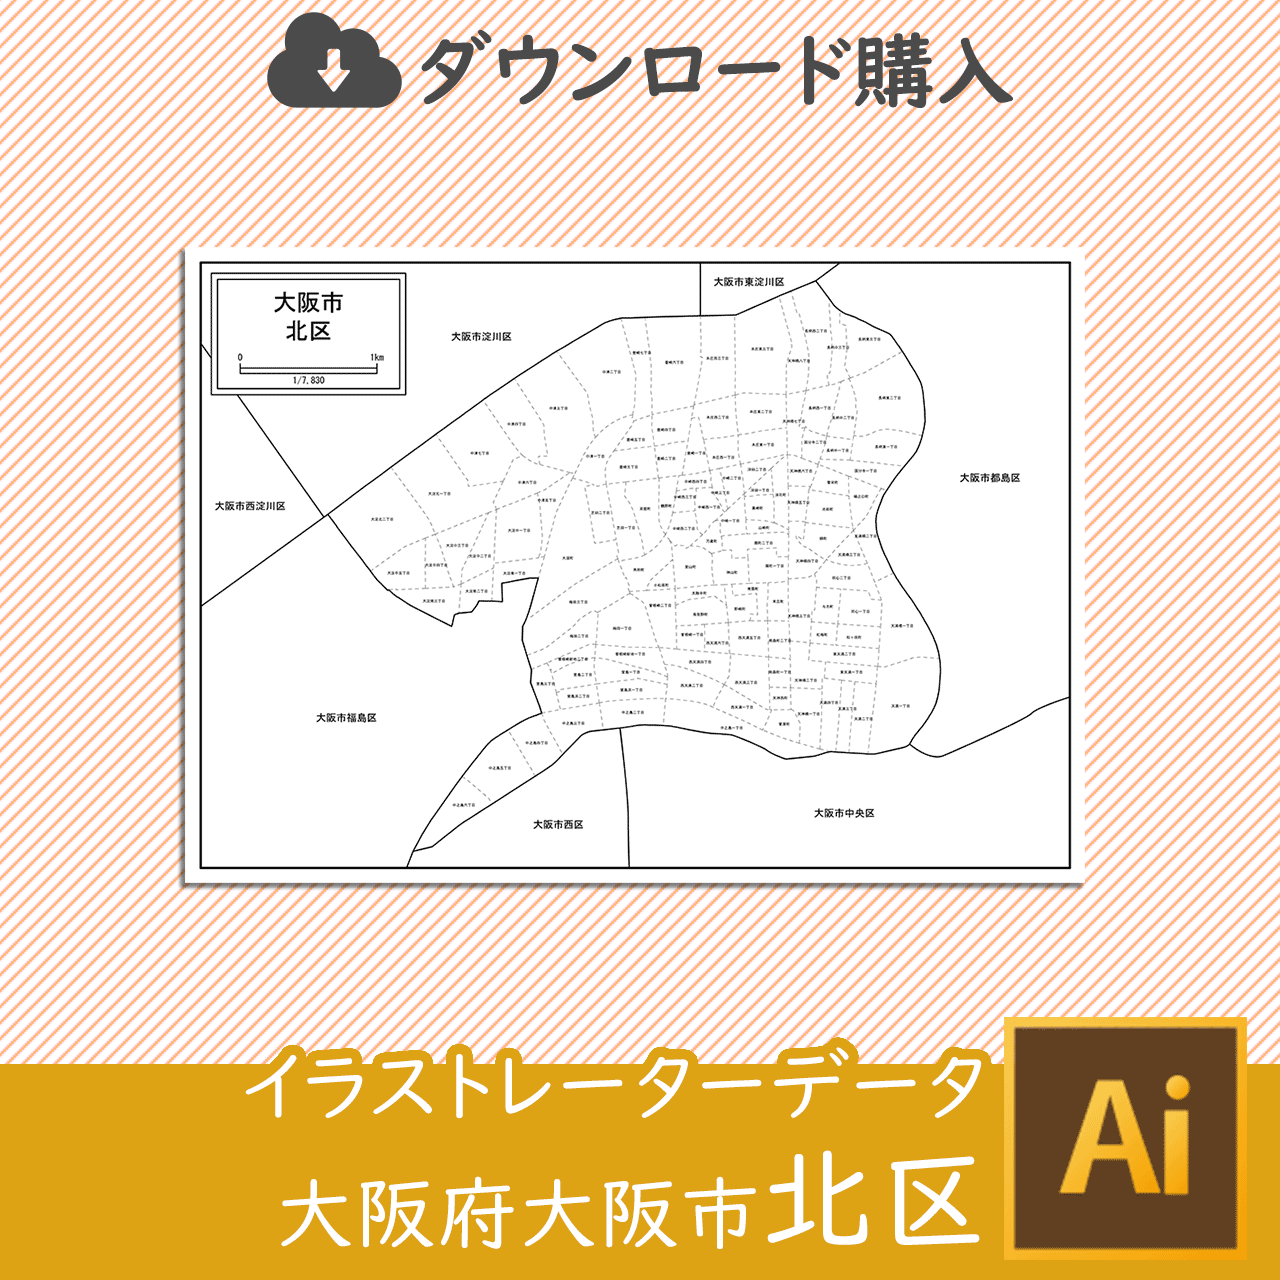 大阪市北区のaiデータのサムネイル画像